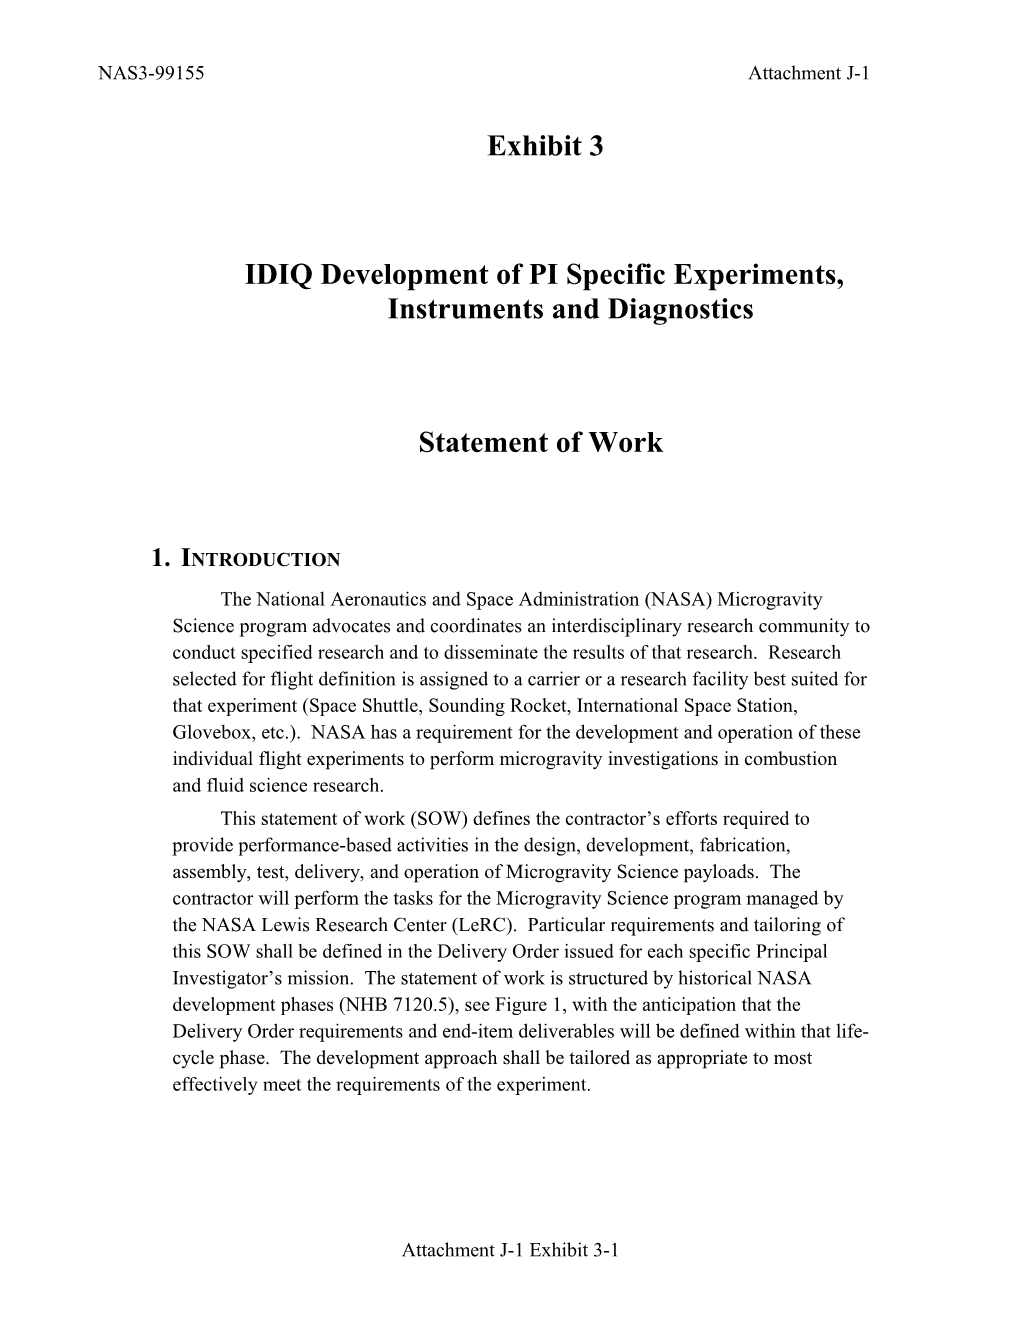 IDIQ Development of PI Specific Experiments, Instruments and Diagnostics